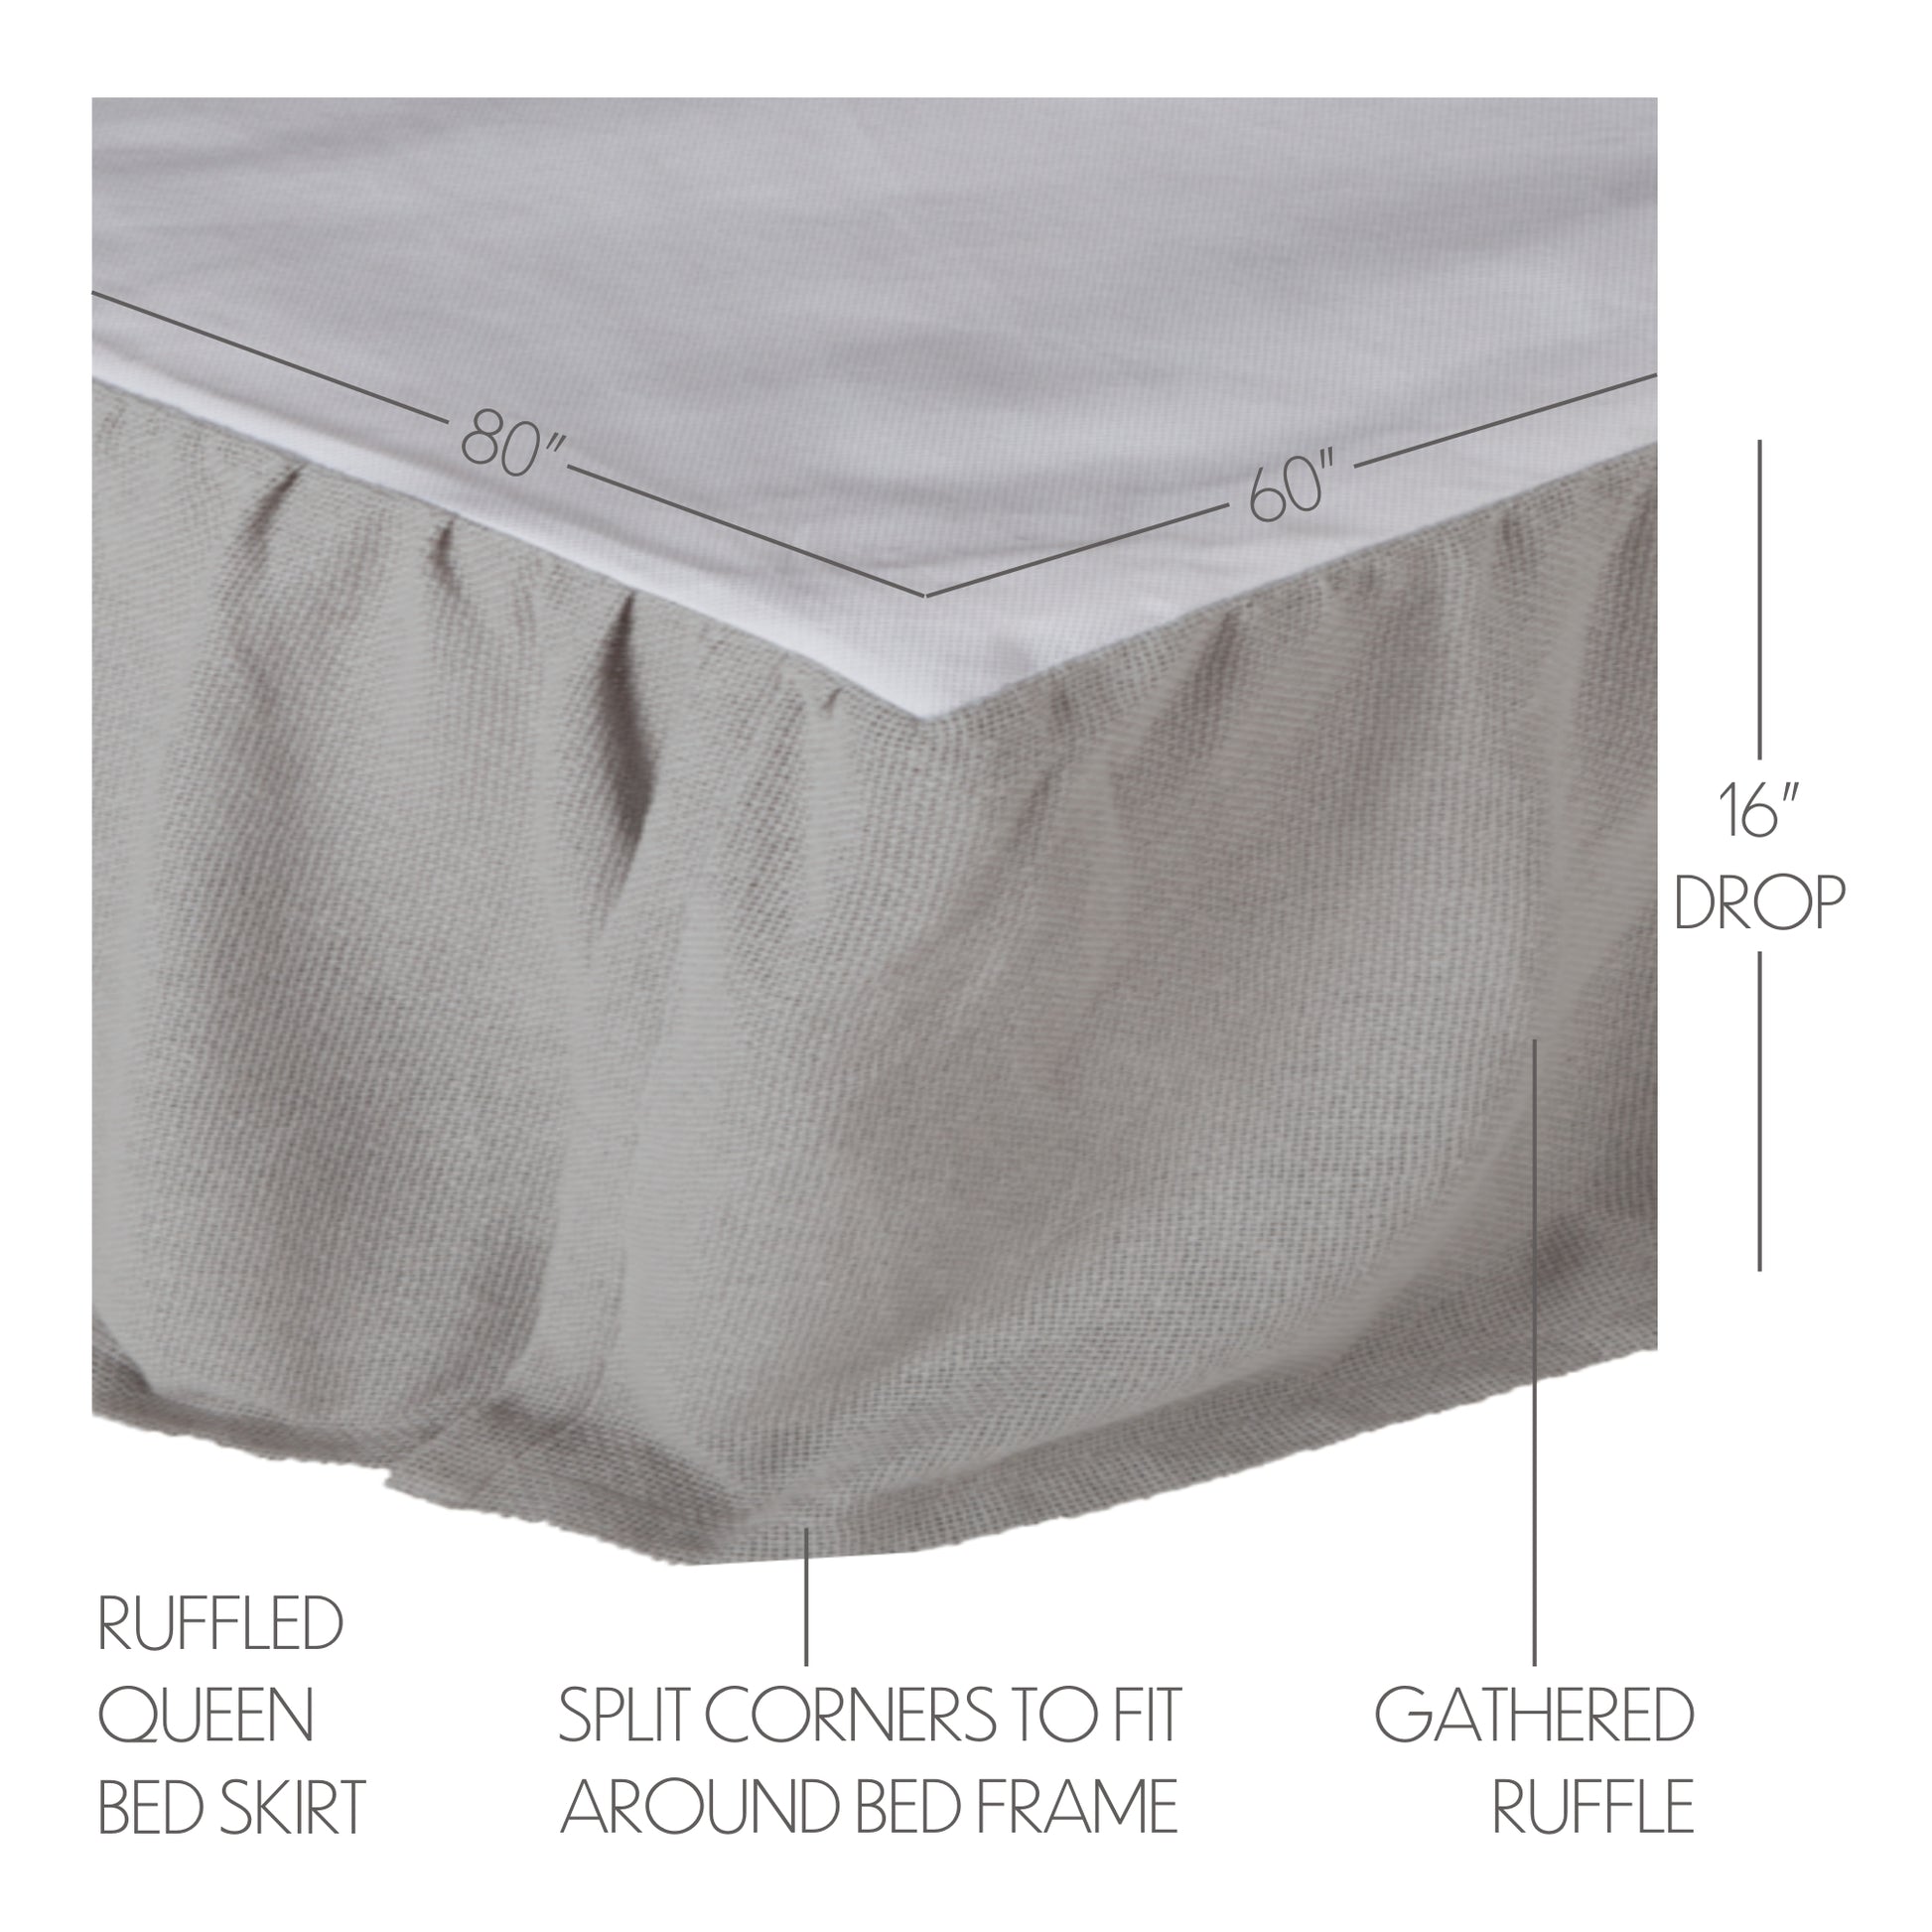 70057-Burlap-Dove-Grey-Ruffled-Queen-Bed-Skirt-60x80x16-image-5